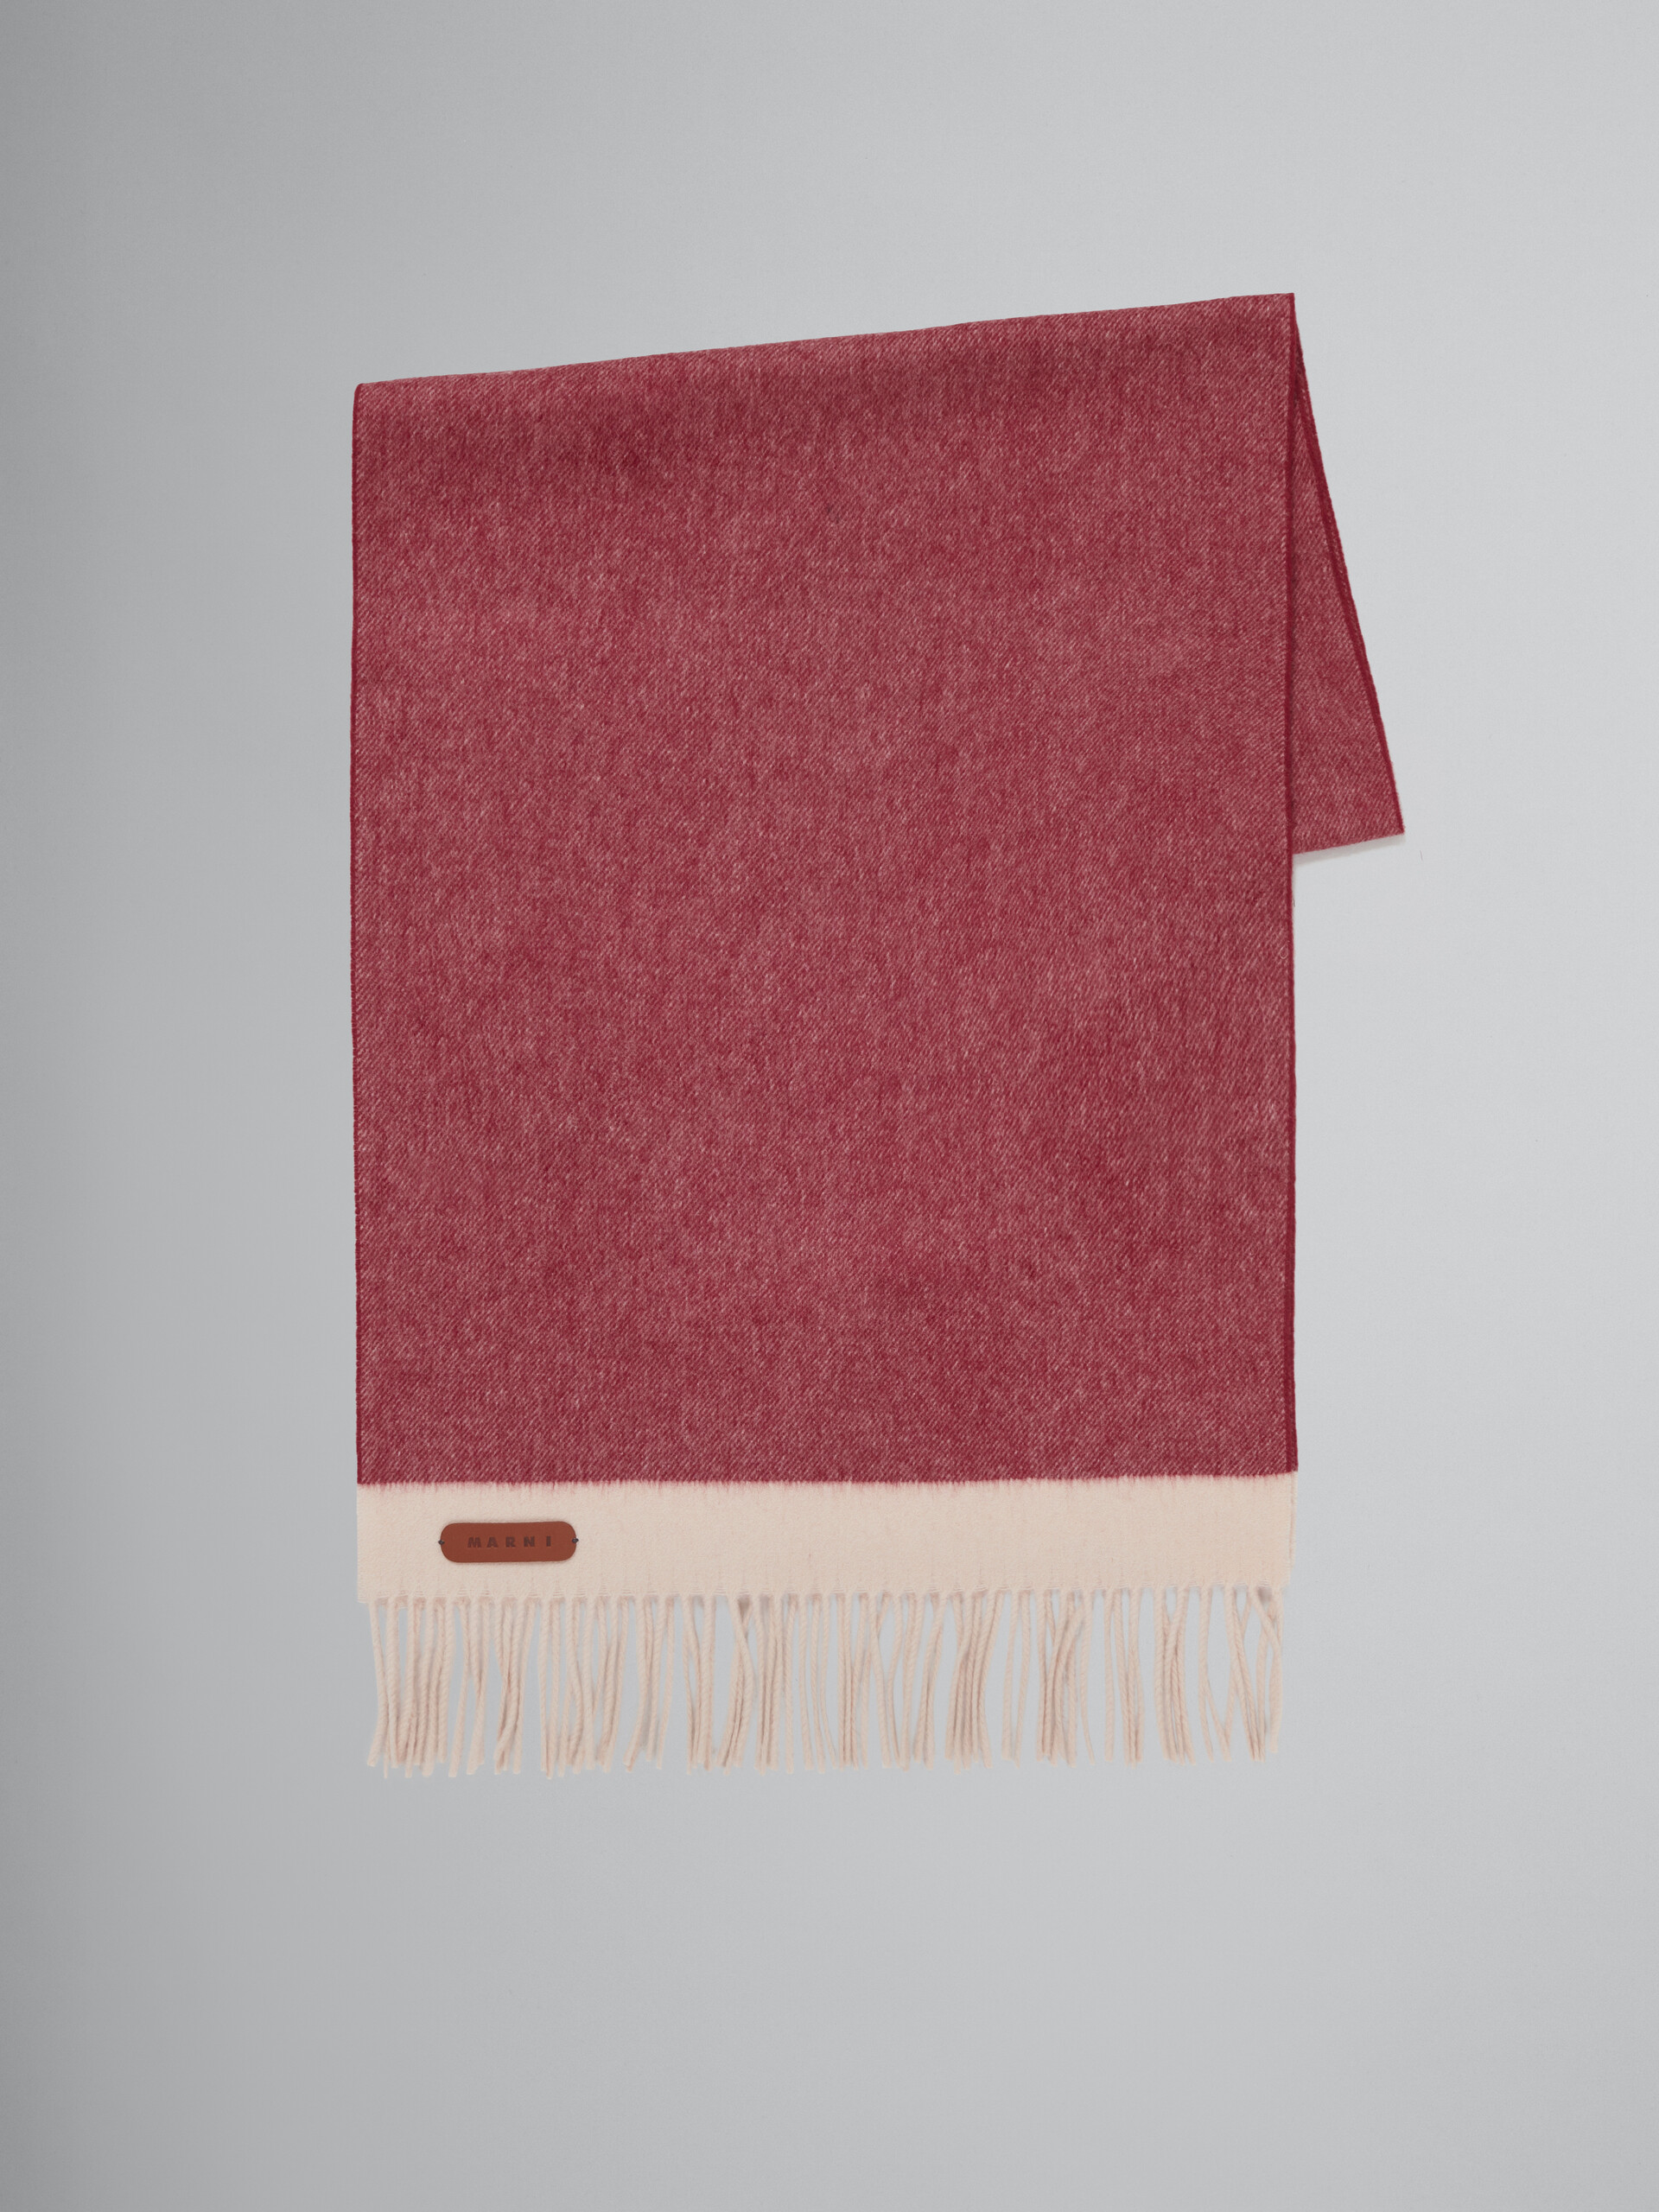 Sciarpa in cashmere e lana vergine bordeaux con applicazione in pelle - Sciarpe - Image 1